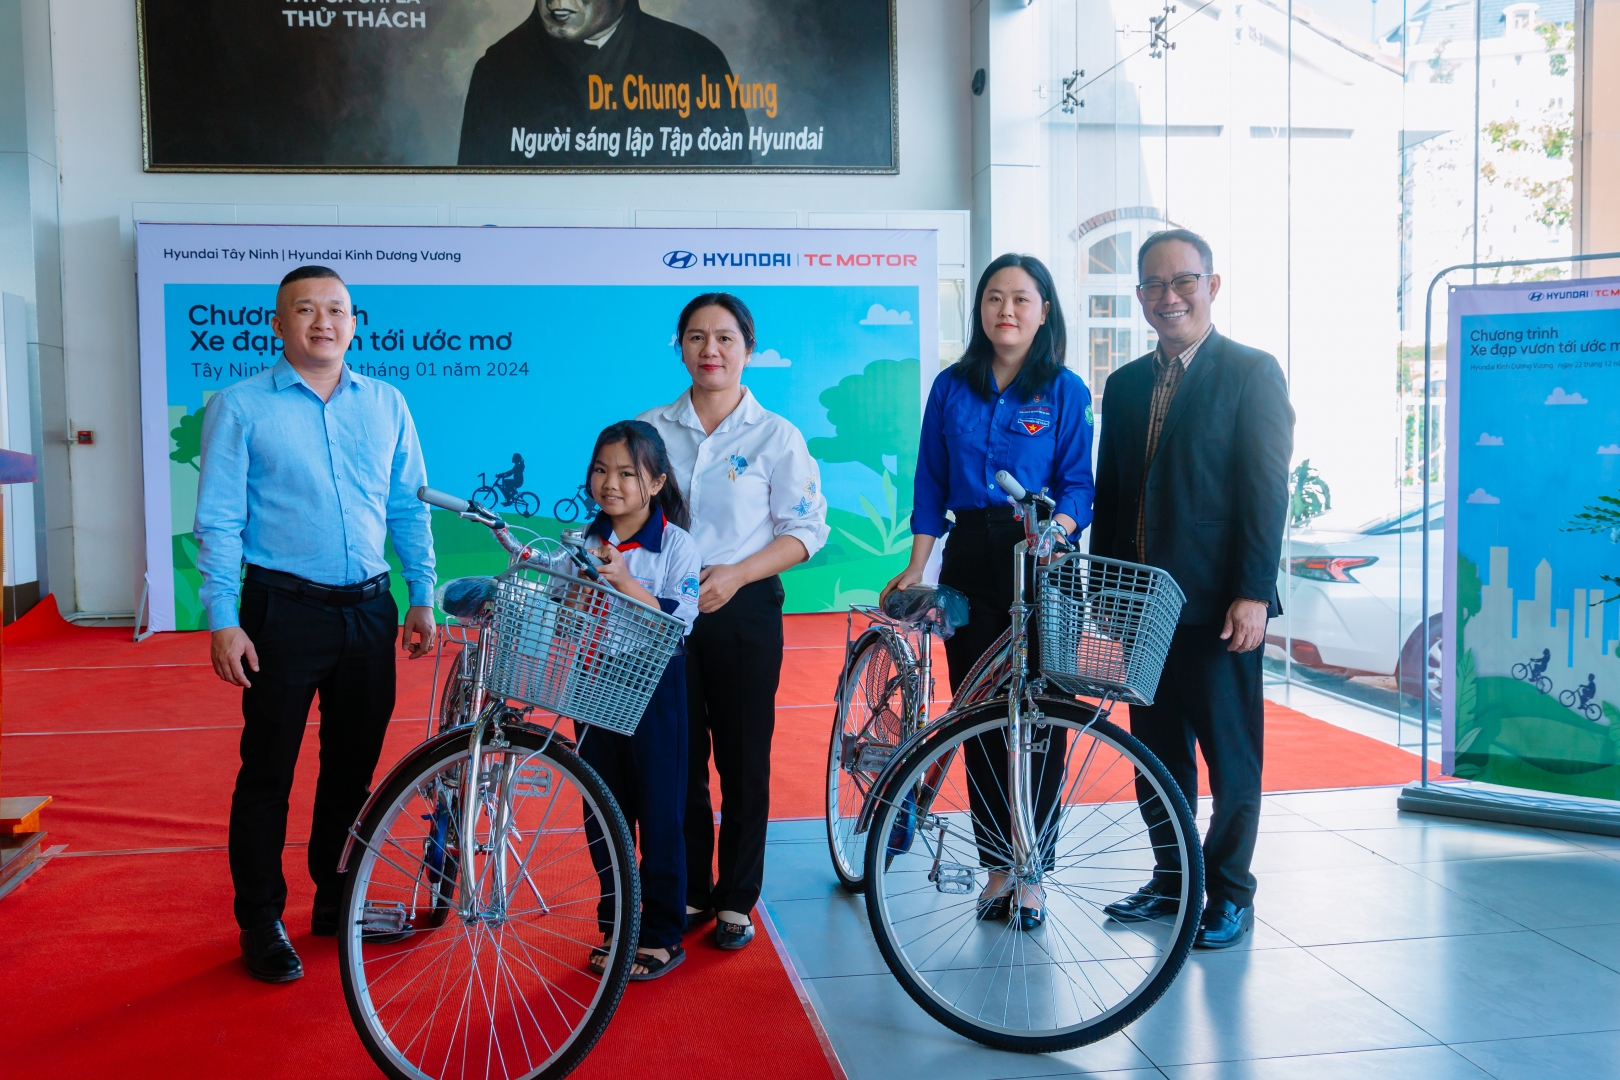 Xe đạp vươn tới ước mơ cùng Hyundai Kinh Dương Vương